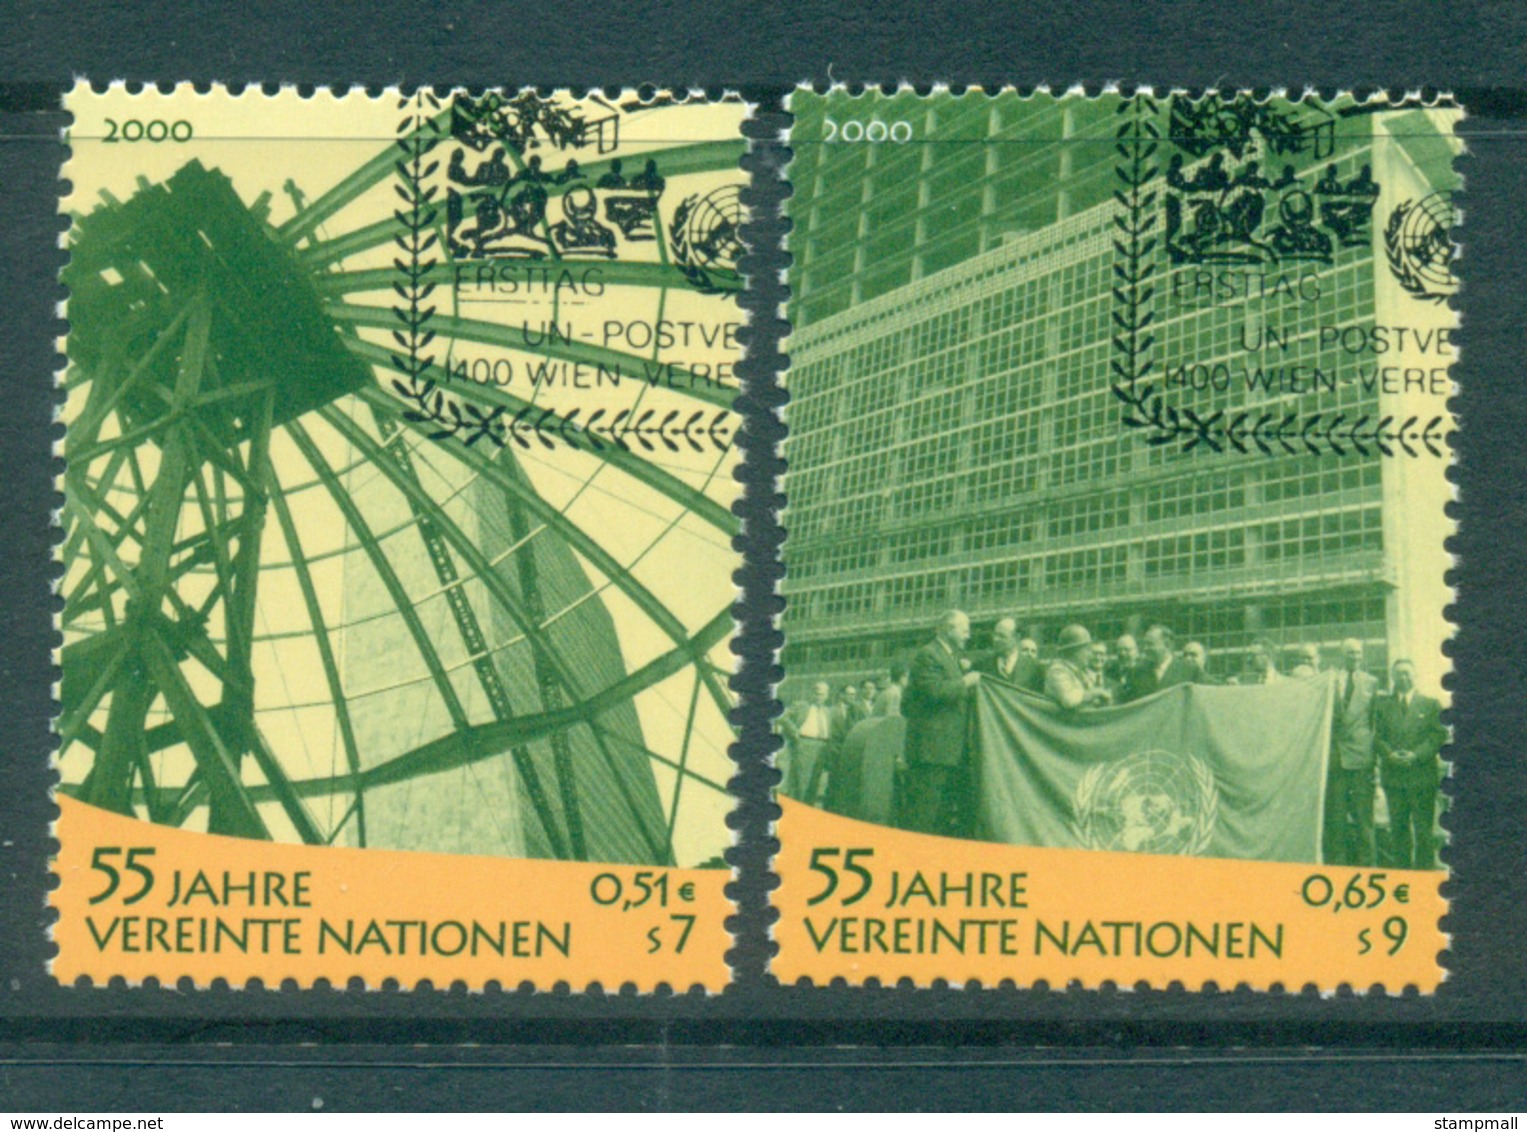 UN Vienna 2000 UN Anniv. CTO Lot65993 - Unused Stamps